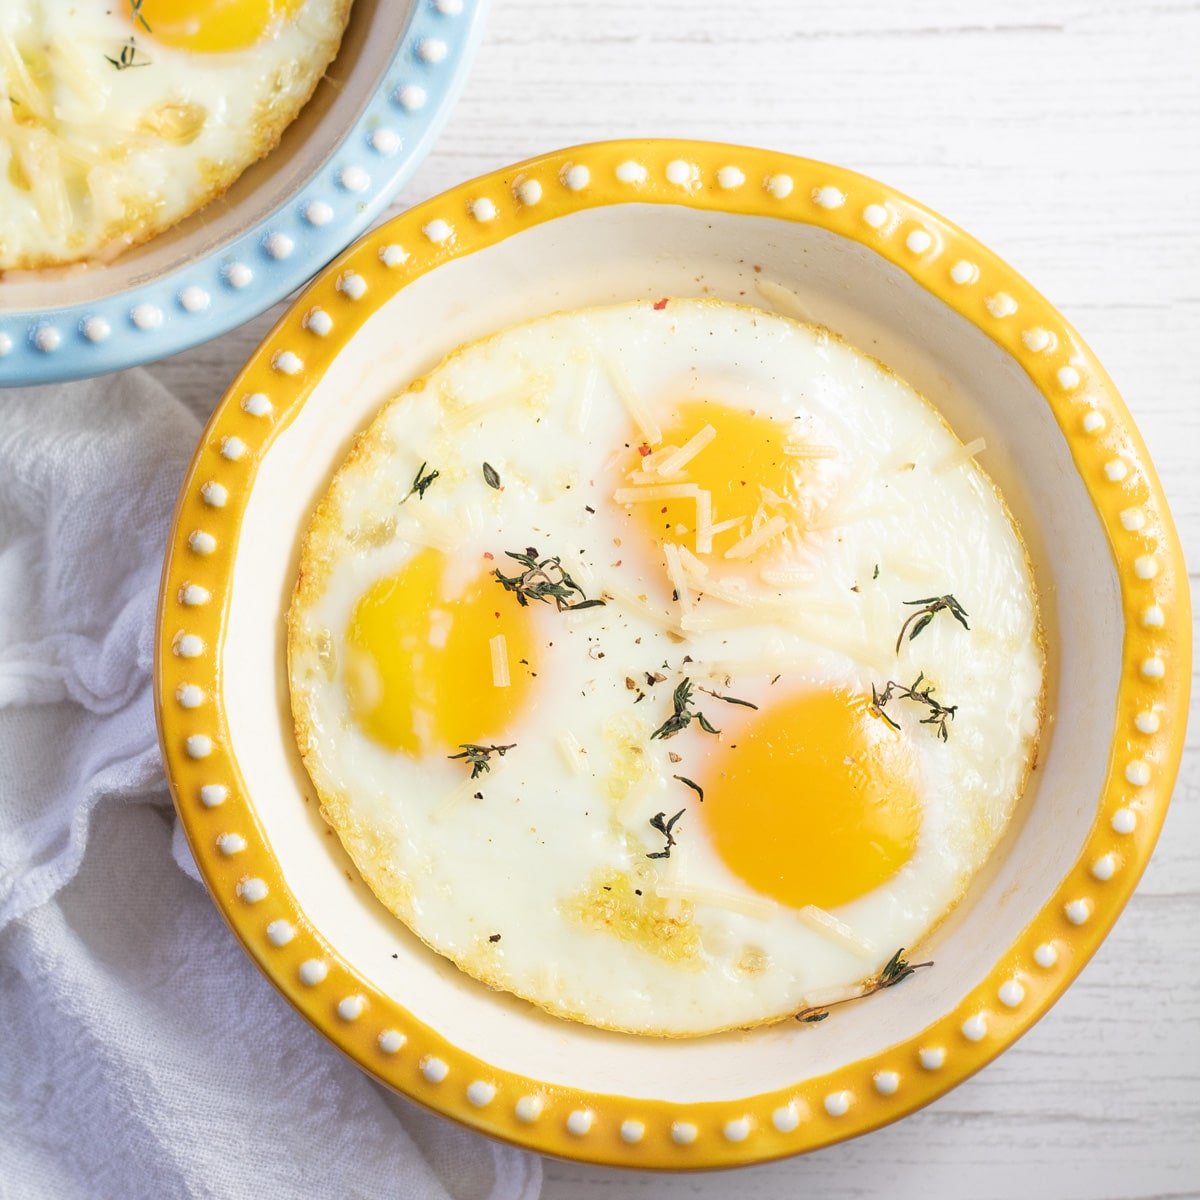 أفضل بيض مخبوز يمكن تحضيره لأي وجبة إفطار تظهر في طبق الخبز الضحل.